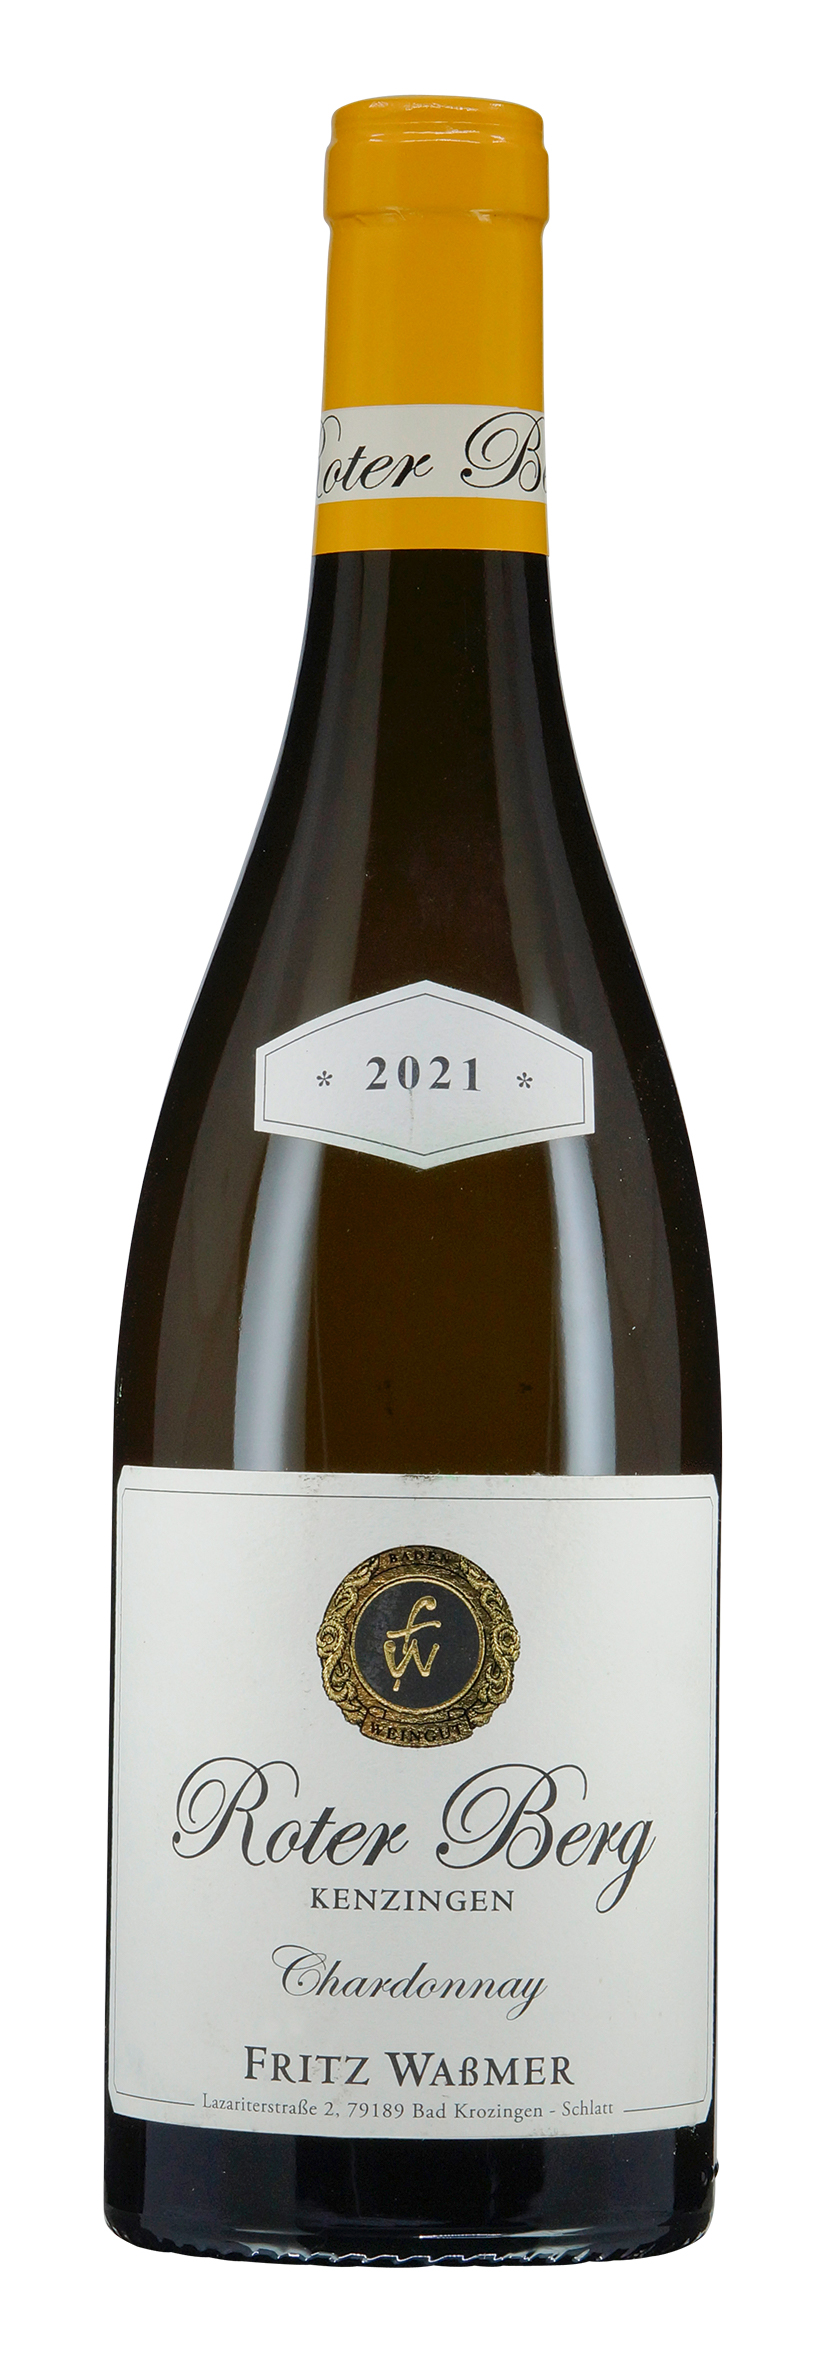 Kenzinger Roter Berg Chardonnay trocken 2021